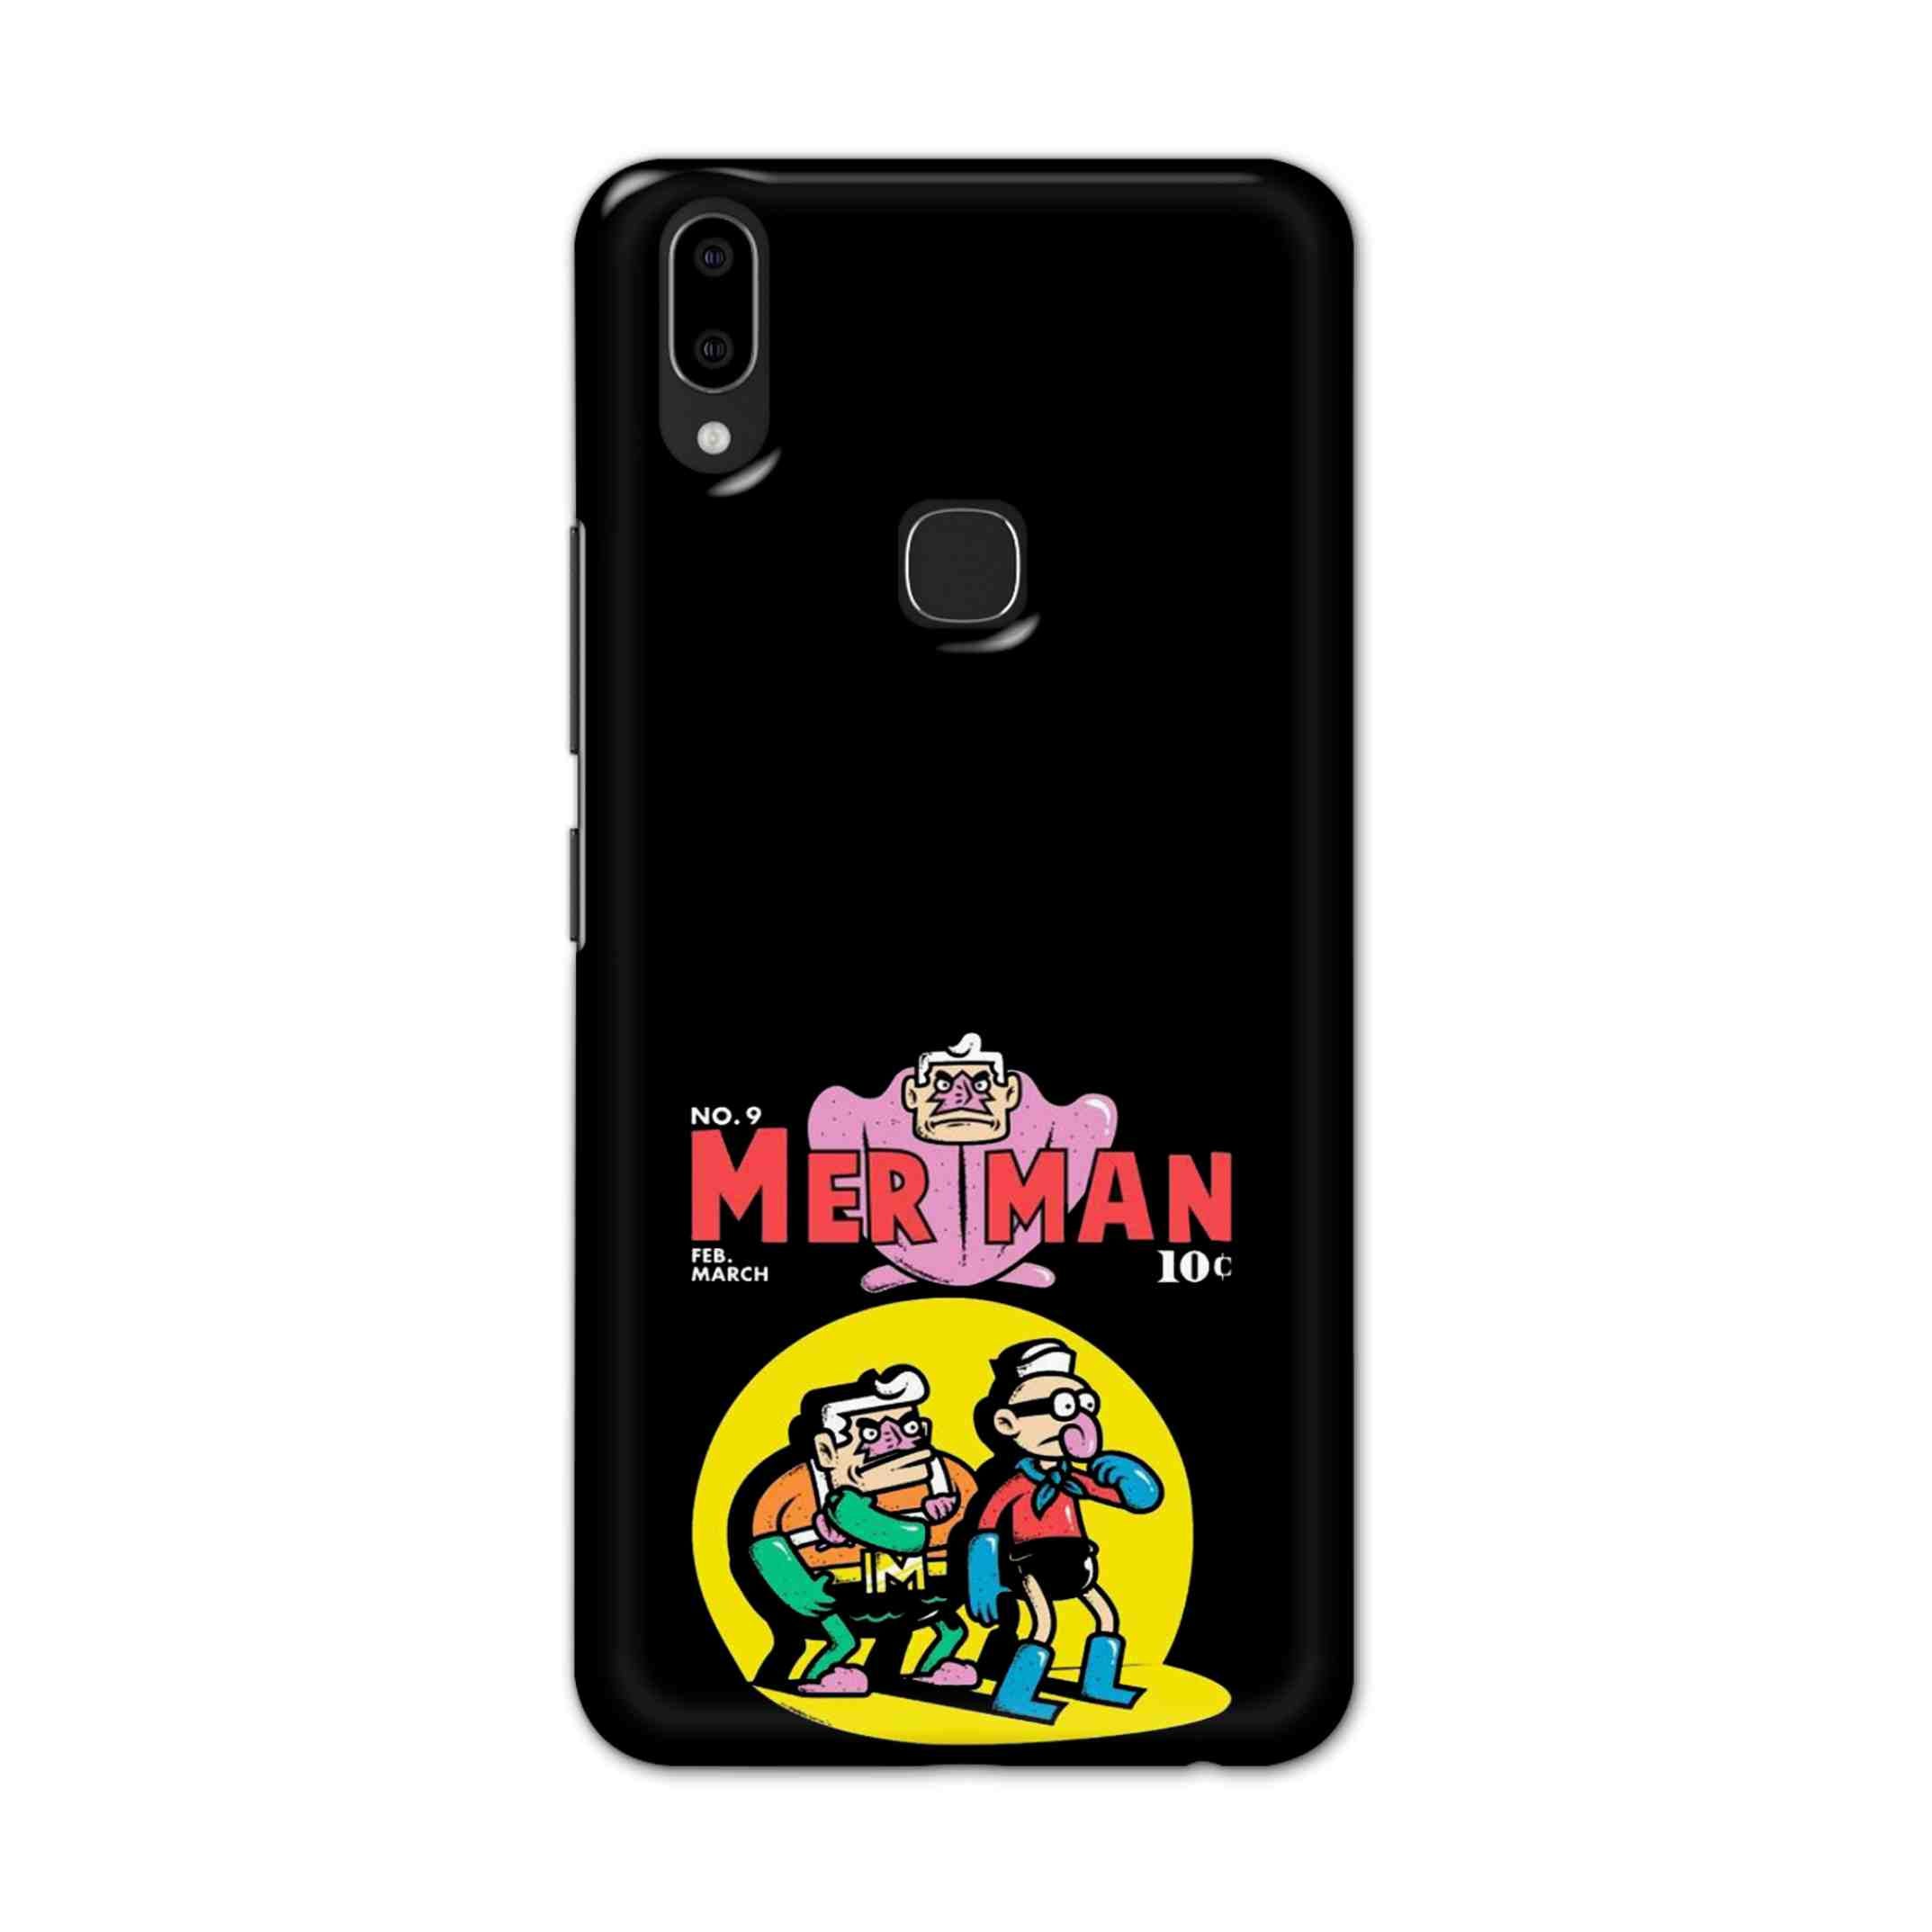 Buy Merman Hard Back Mobile Phone Case Cover For Vivo V9 / V9 Youth Online